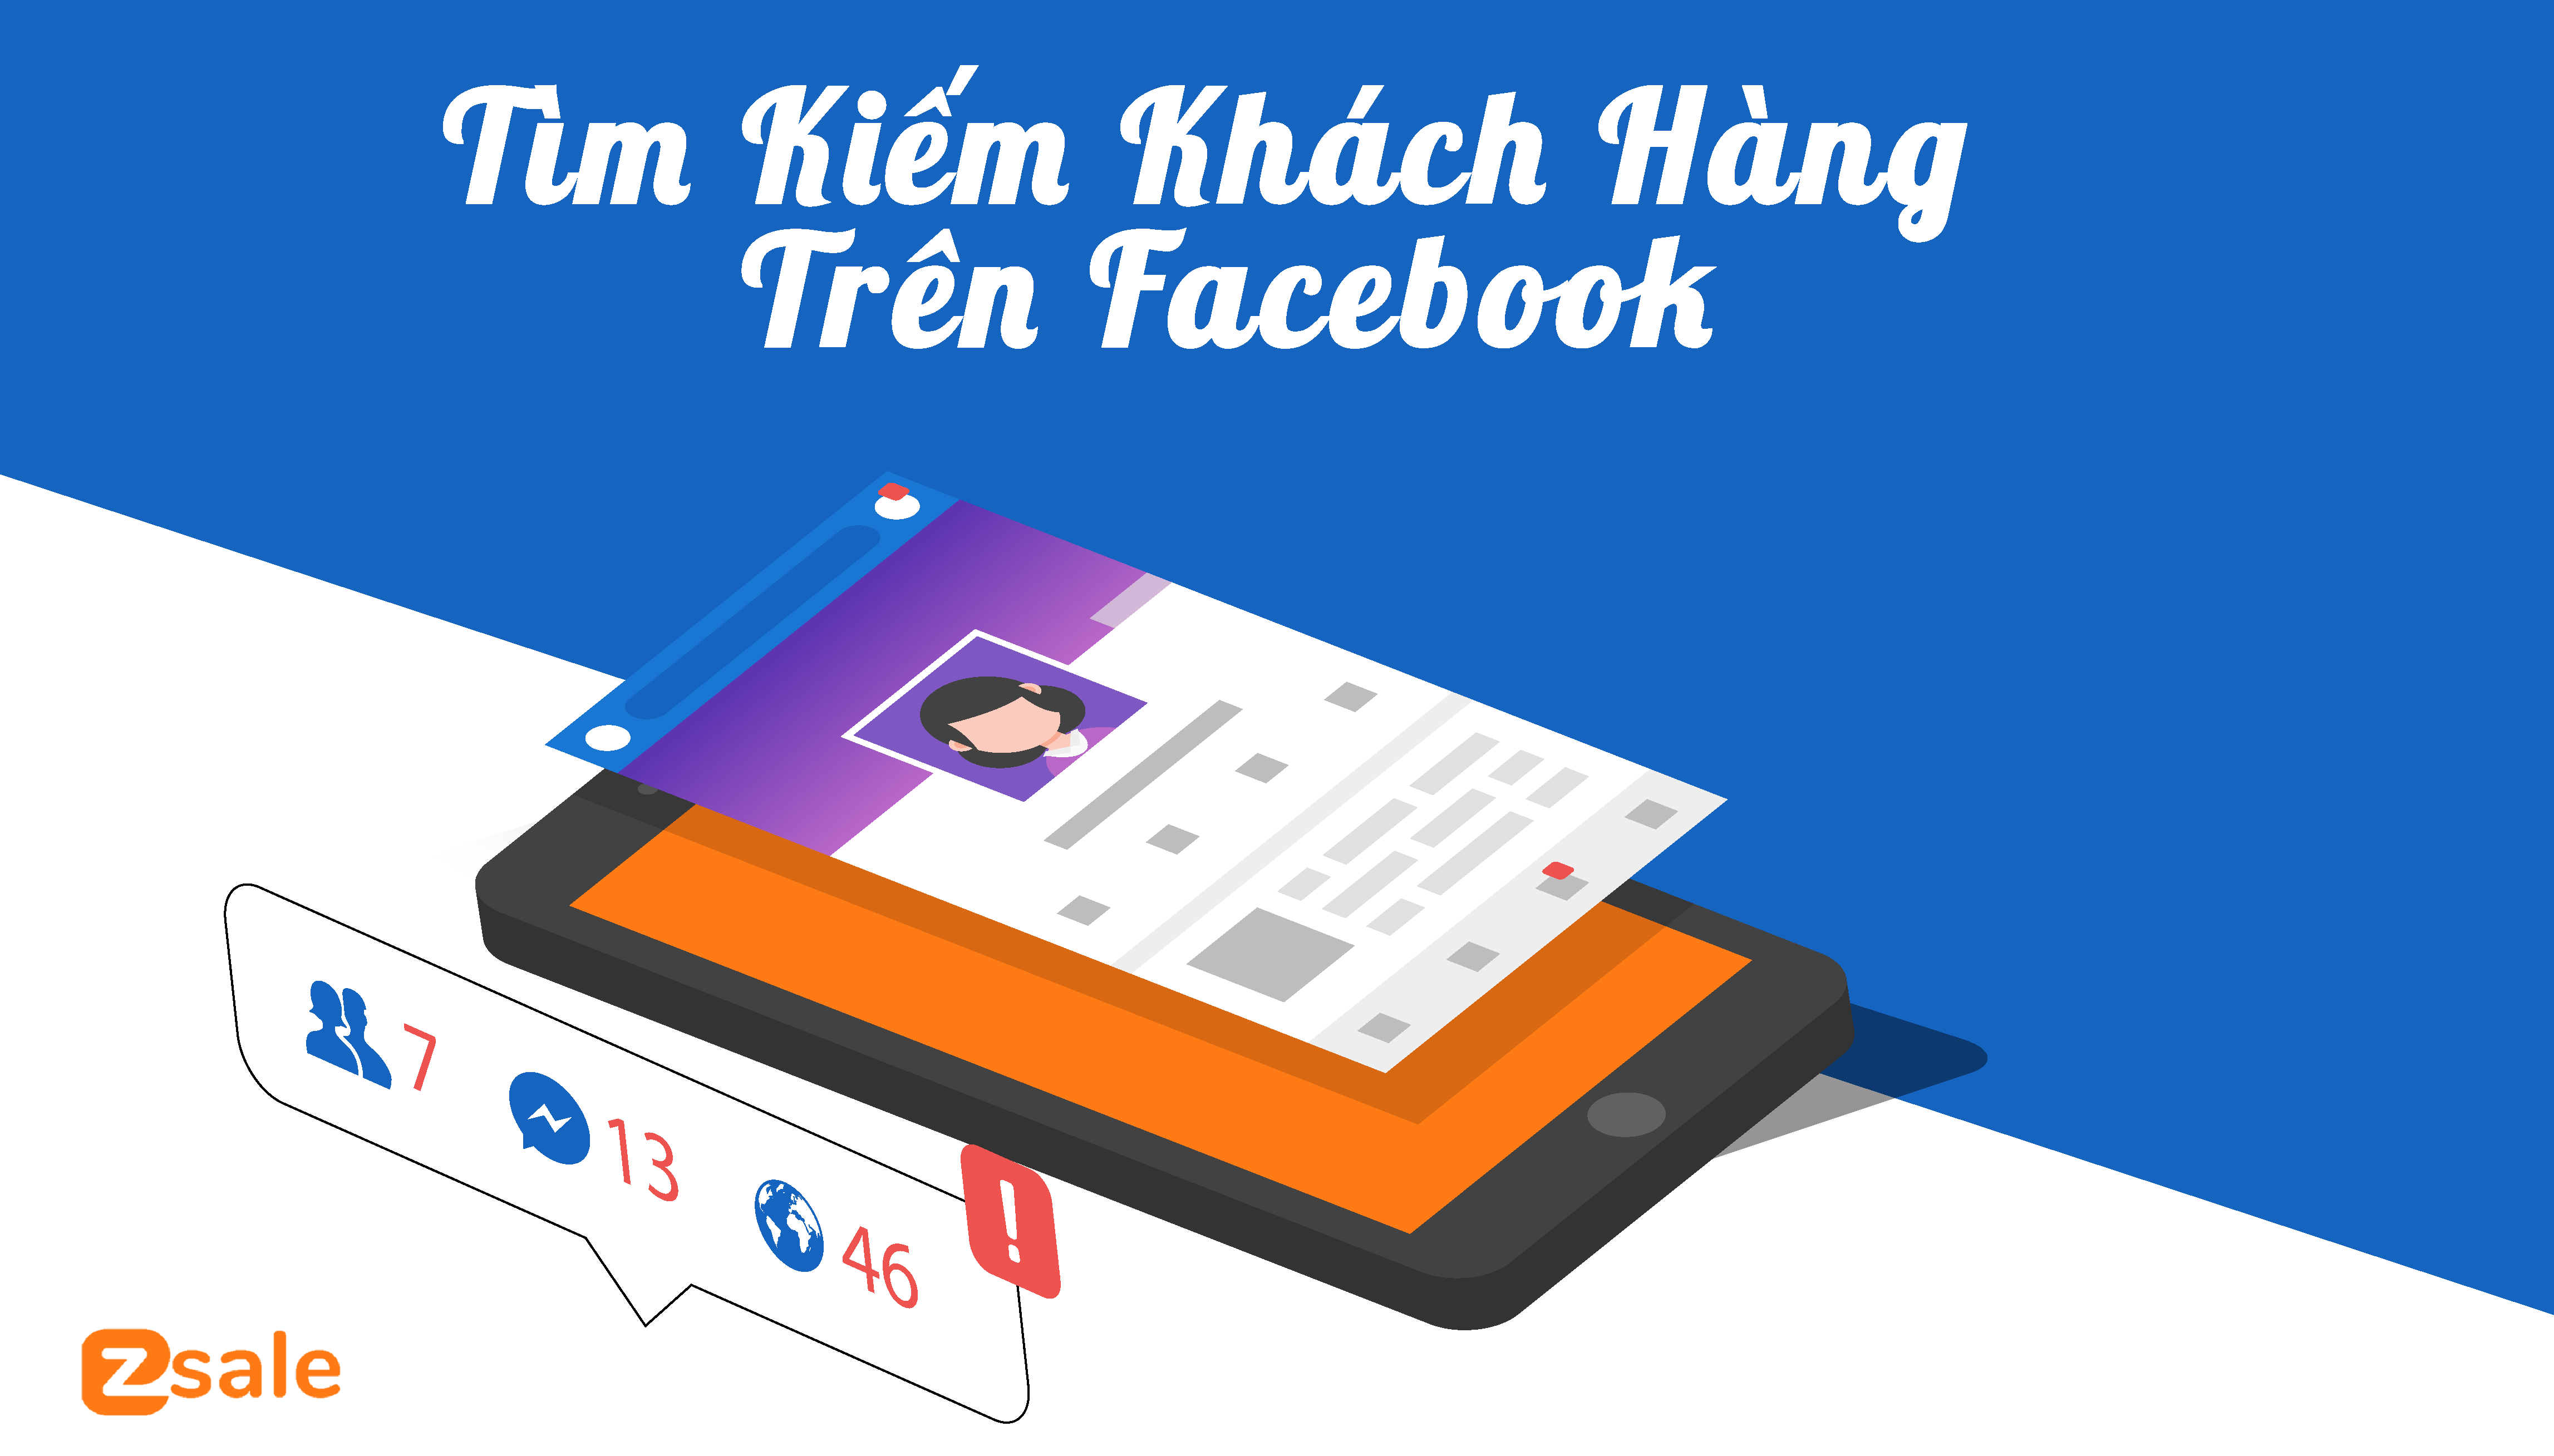 Cach-tim-kiem-khach-hang-tren-Facebook-1